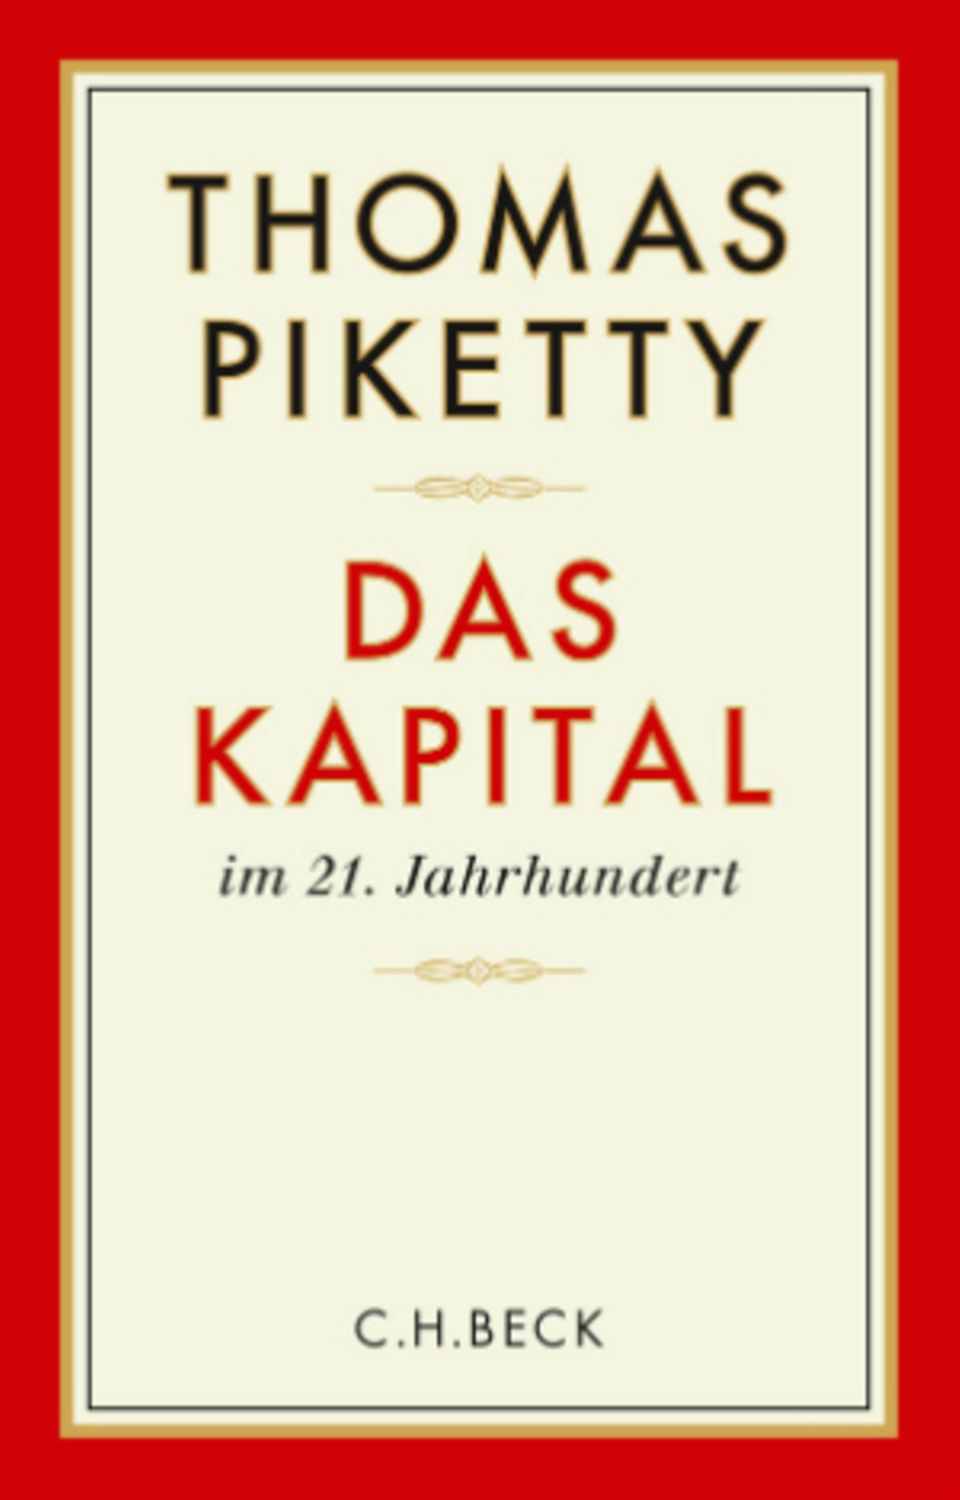 Die deutsche Übersetzung von Pikettys Buch ist am 7. Oktober erschienen